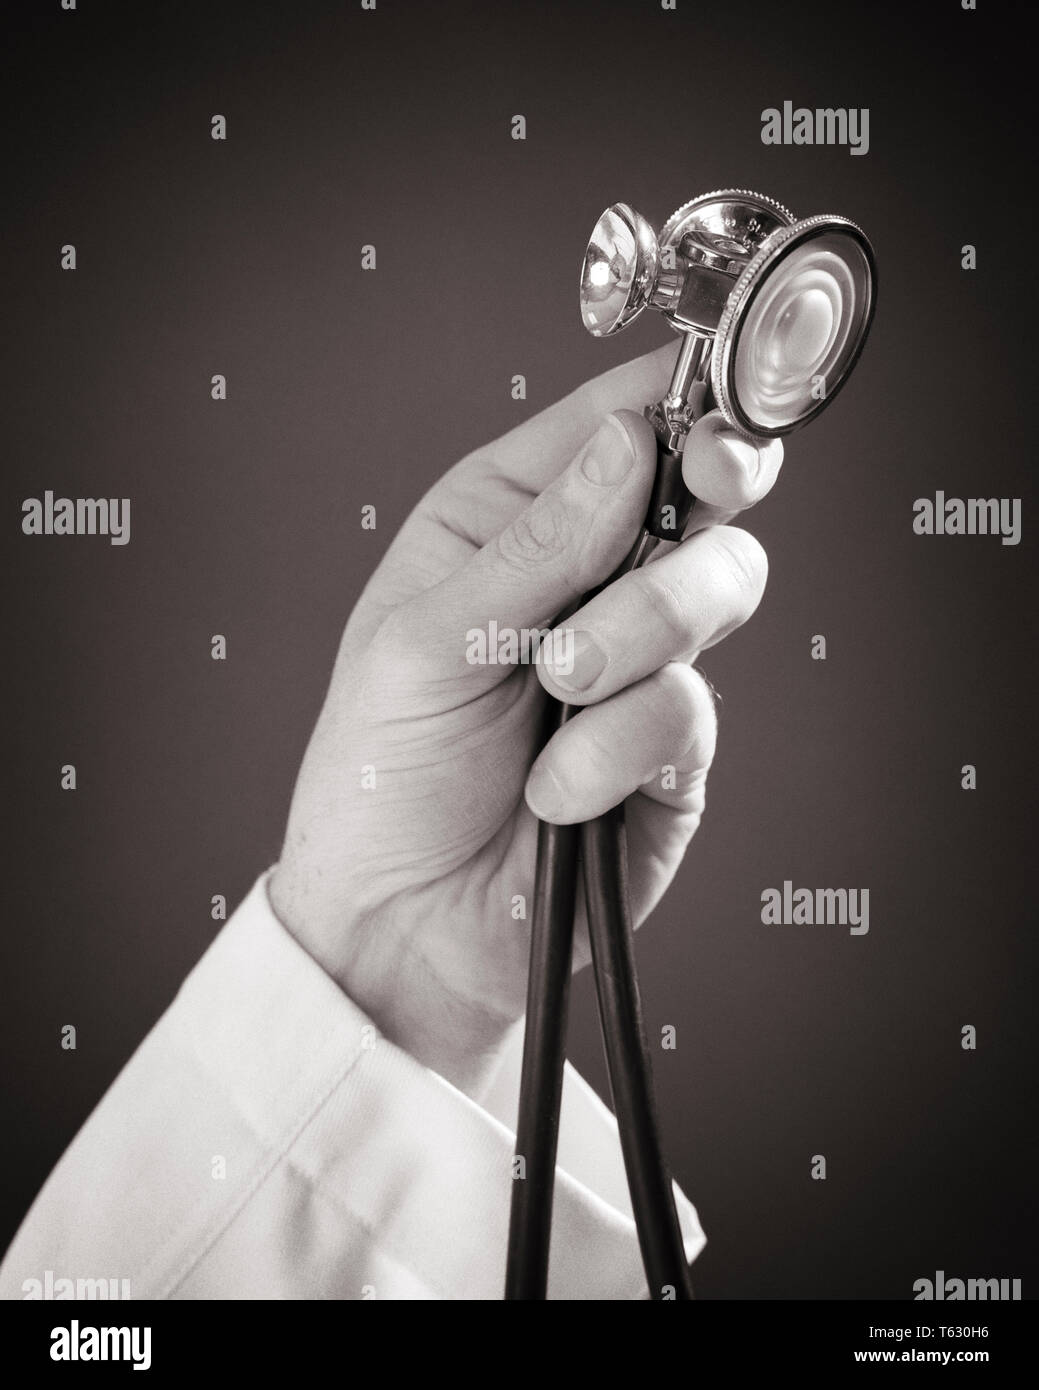 1960 homme médecin's hand holding a stethoscope - s15205 HAR001 HARS, MÉDECINS DE SOINS DE SANTÉ DE L'INNOVATION DIAGNOSTIC SÉVÈRE TRAITEMENT GUÉRISSEUR PROFESSIONS CONCEPT CONCEPTUEL VIE ENCORE PRATICIEN MÉDECIN CONCEPTS symboliques des professionnels de l'appareil NOIR ET BLANC DE L'ORIGINE ETHNIQUE CAUCASIENNE MAINS MALADIE SEULEMENT HAR001 REPRÉSENTATION À L'ANCIENNE Banque D'Images